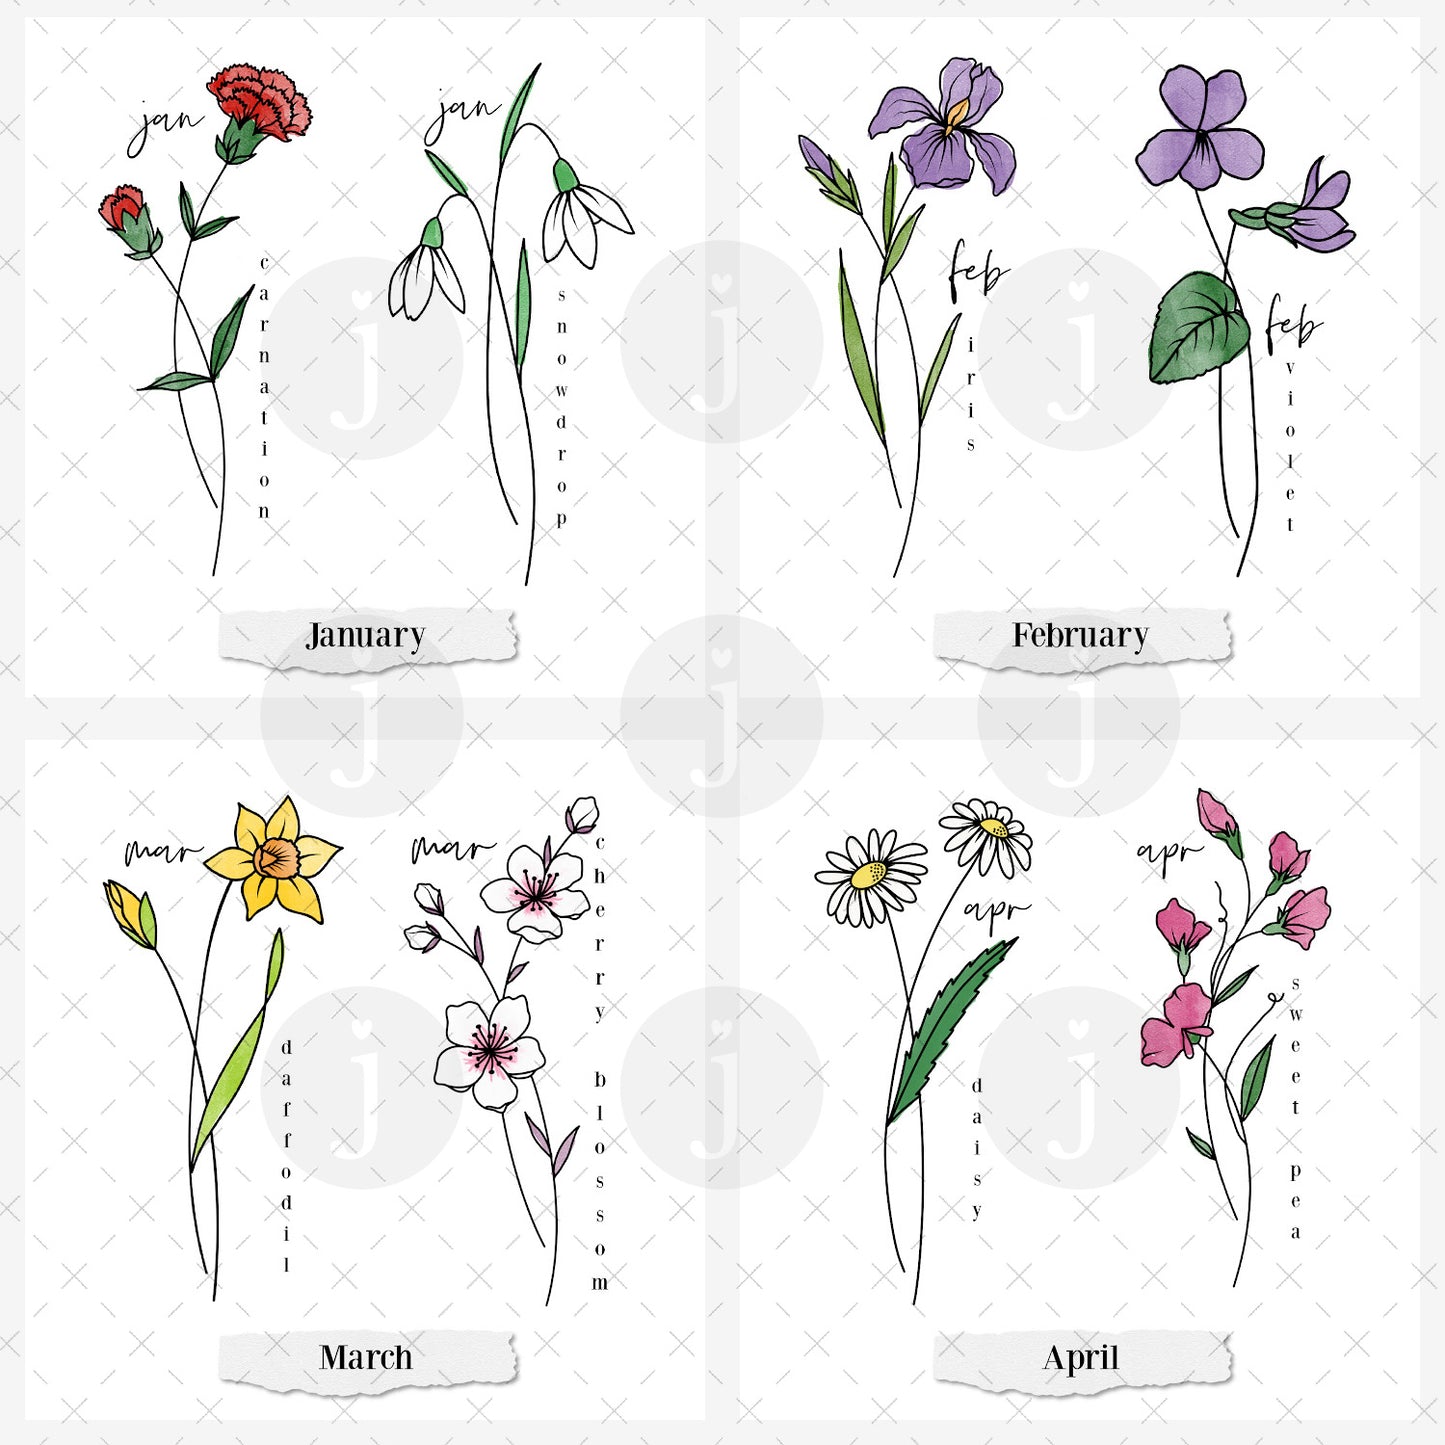 Custom Birth Flower Art Print Up to 5 Flowers | Custom Family Garden Art Print